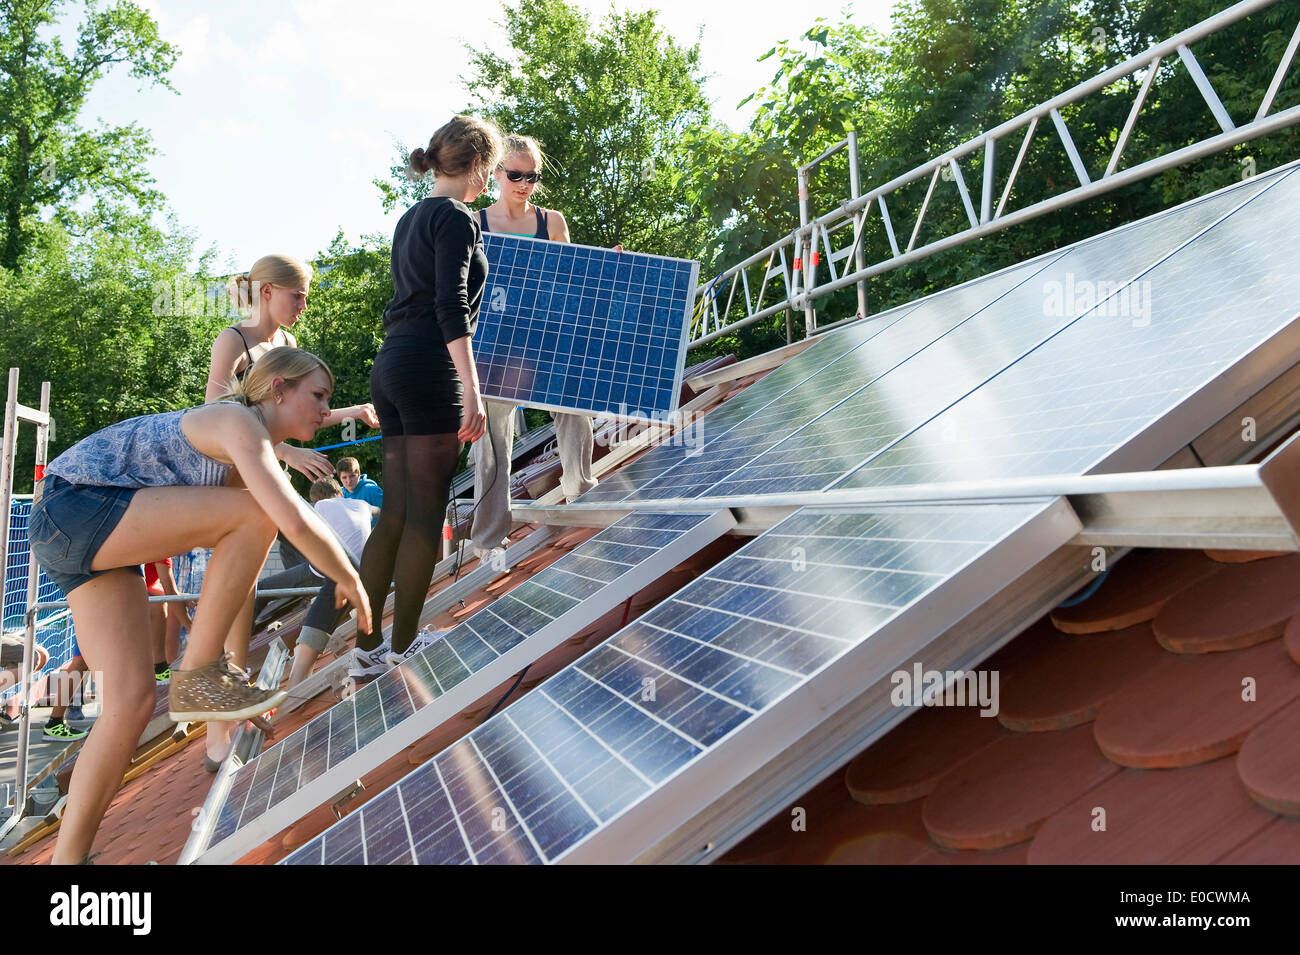 Progetto scuola, gli studenti installando un impianto solare, Freiburg im Breisgau, Foresta Nera, Baden-Wuerttemberg, Germania, Europa Foto Stock